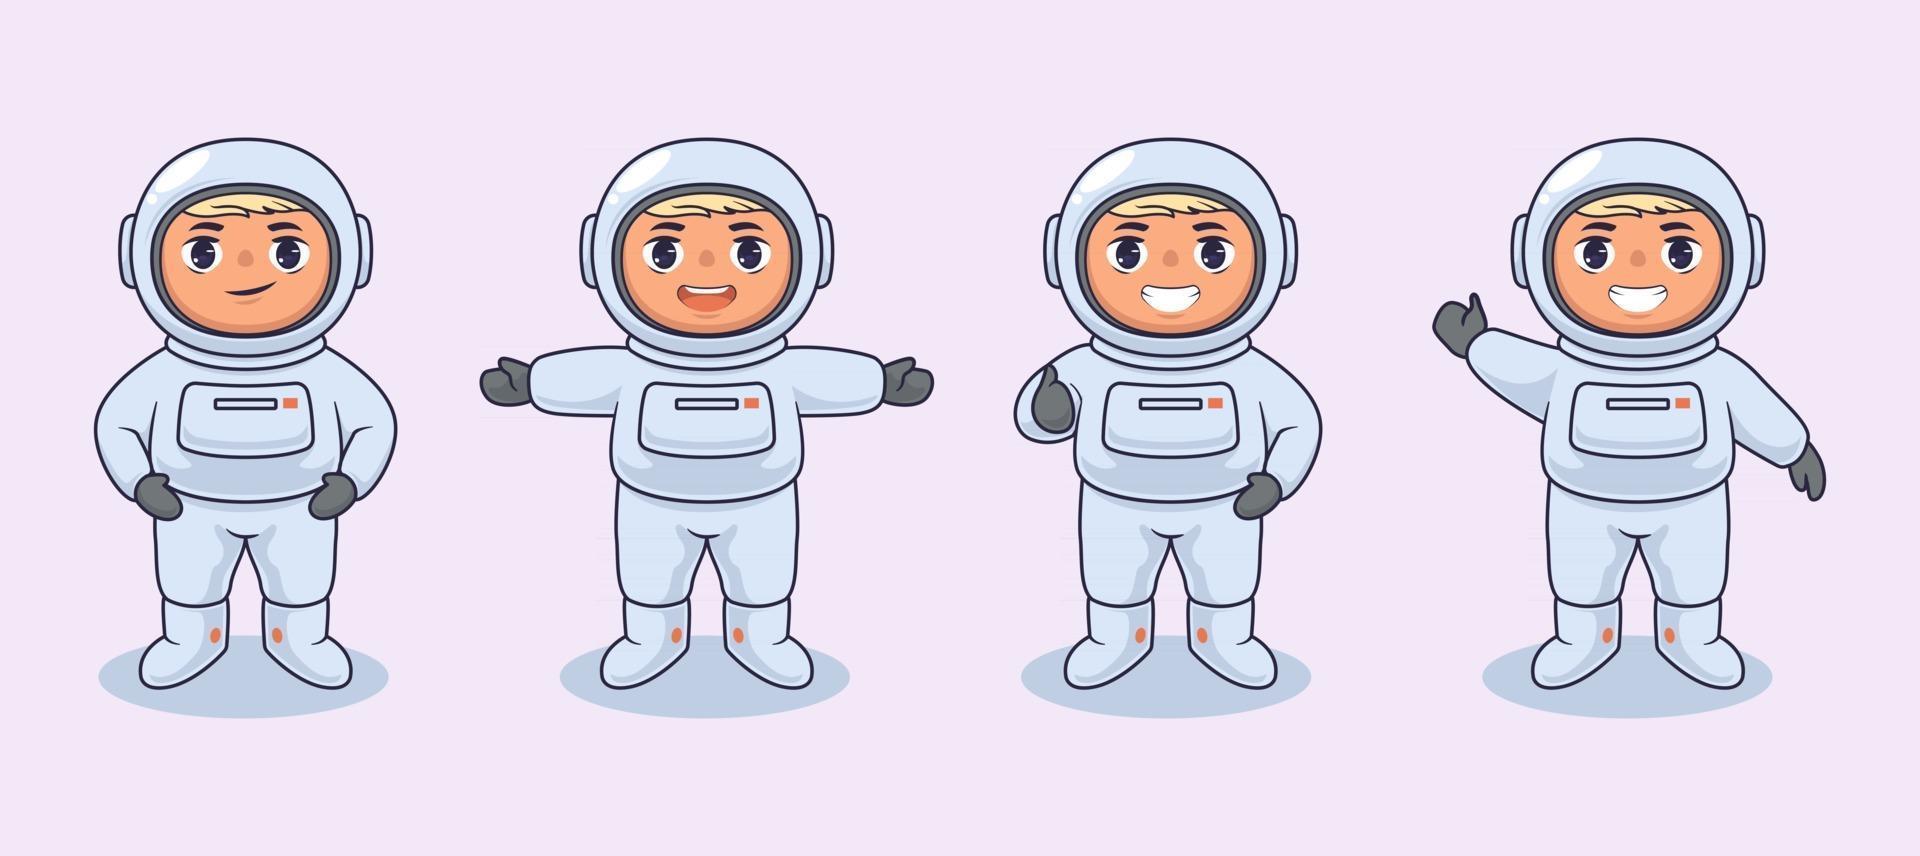 disegno di illustrazione vettoriale per bambini astronauta disegno di illustrazione vettoriale per bambini astronauta